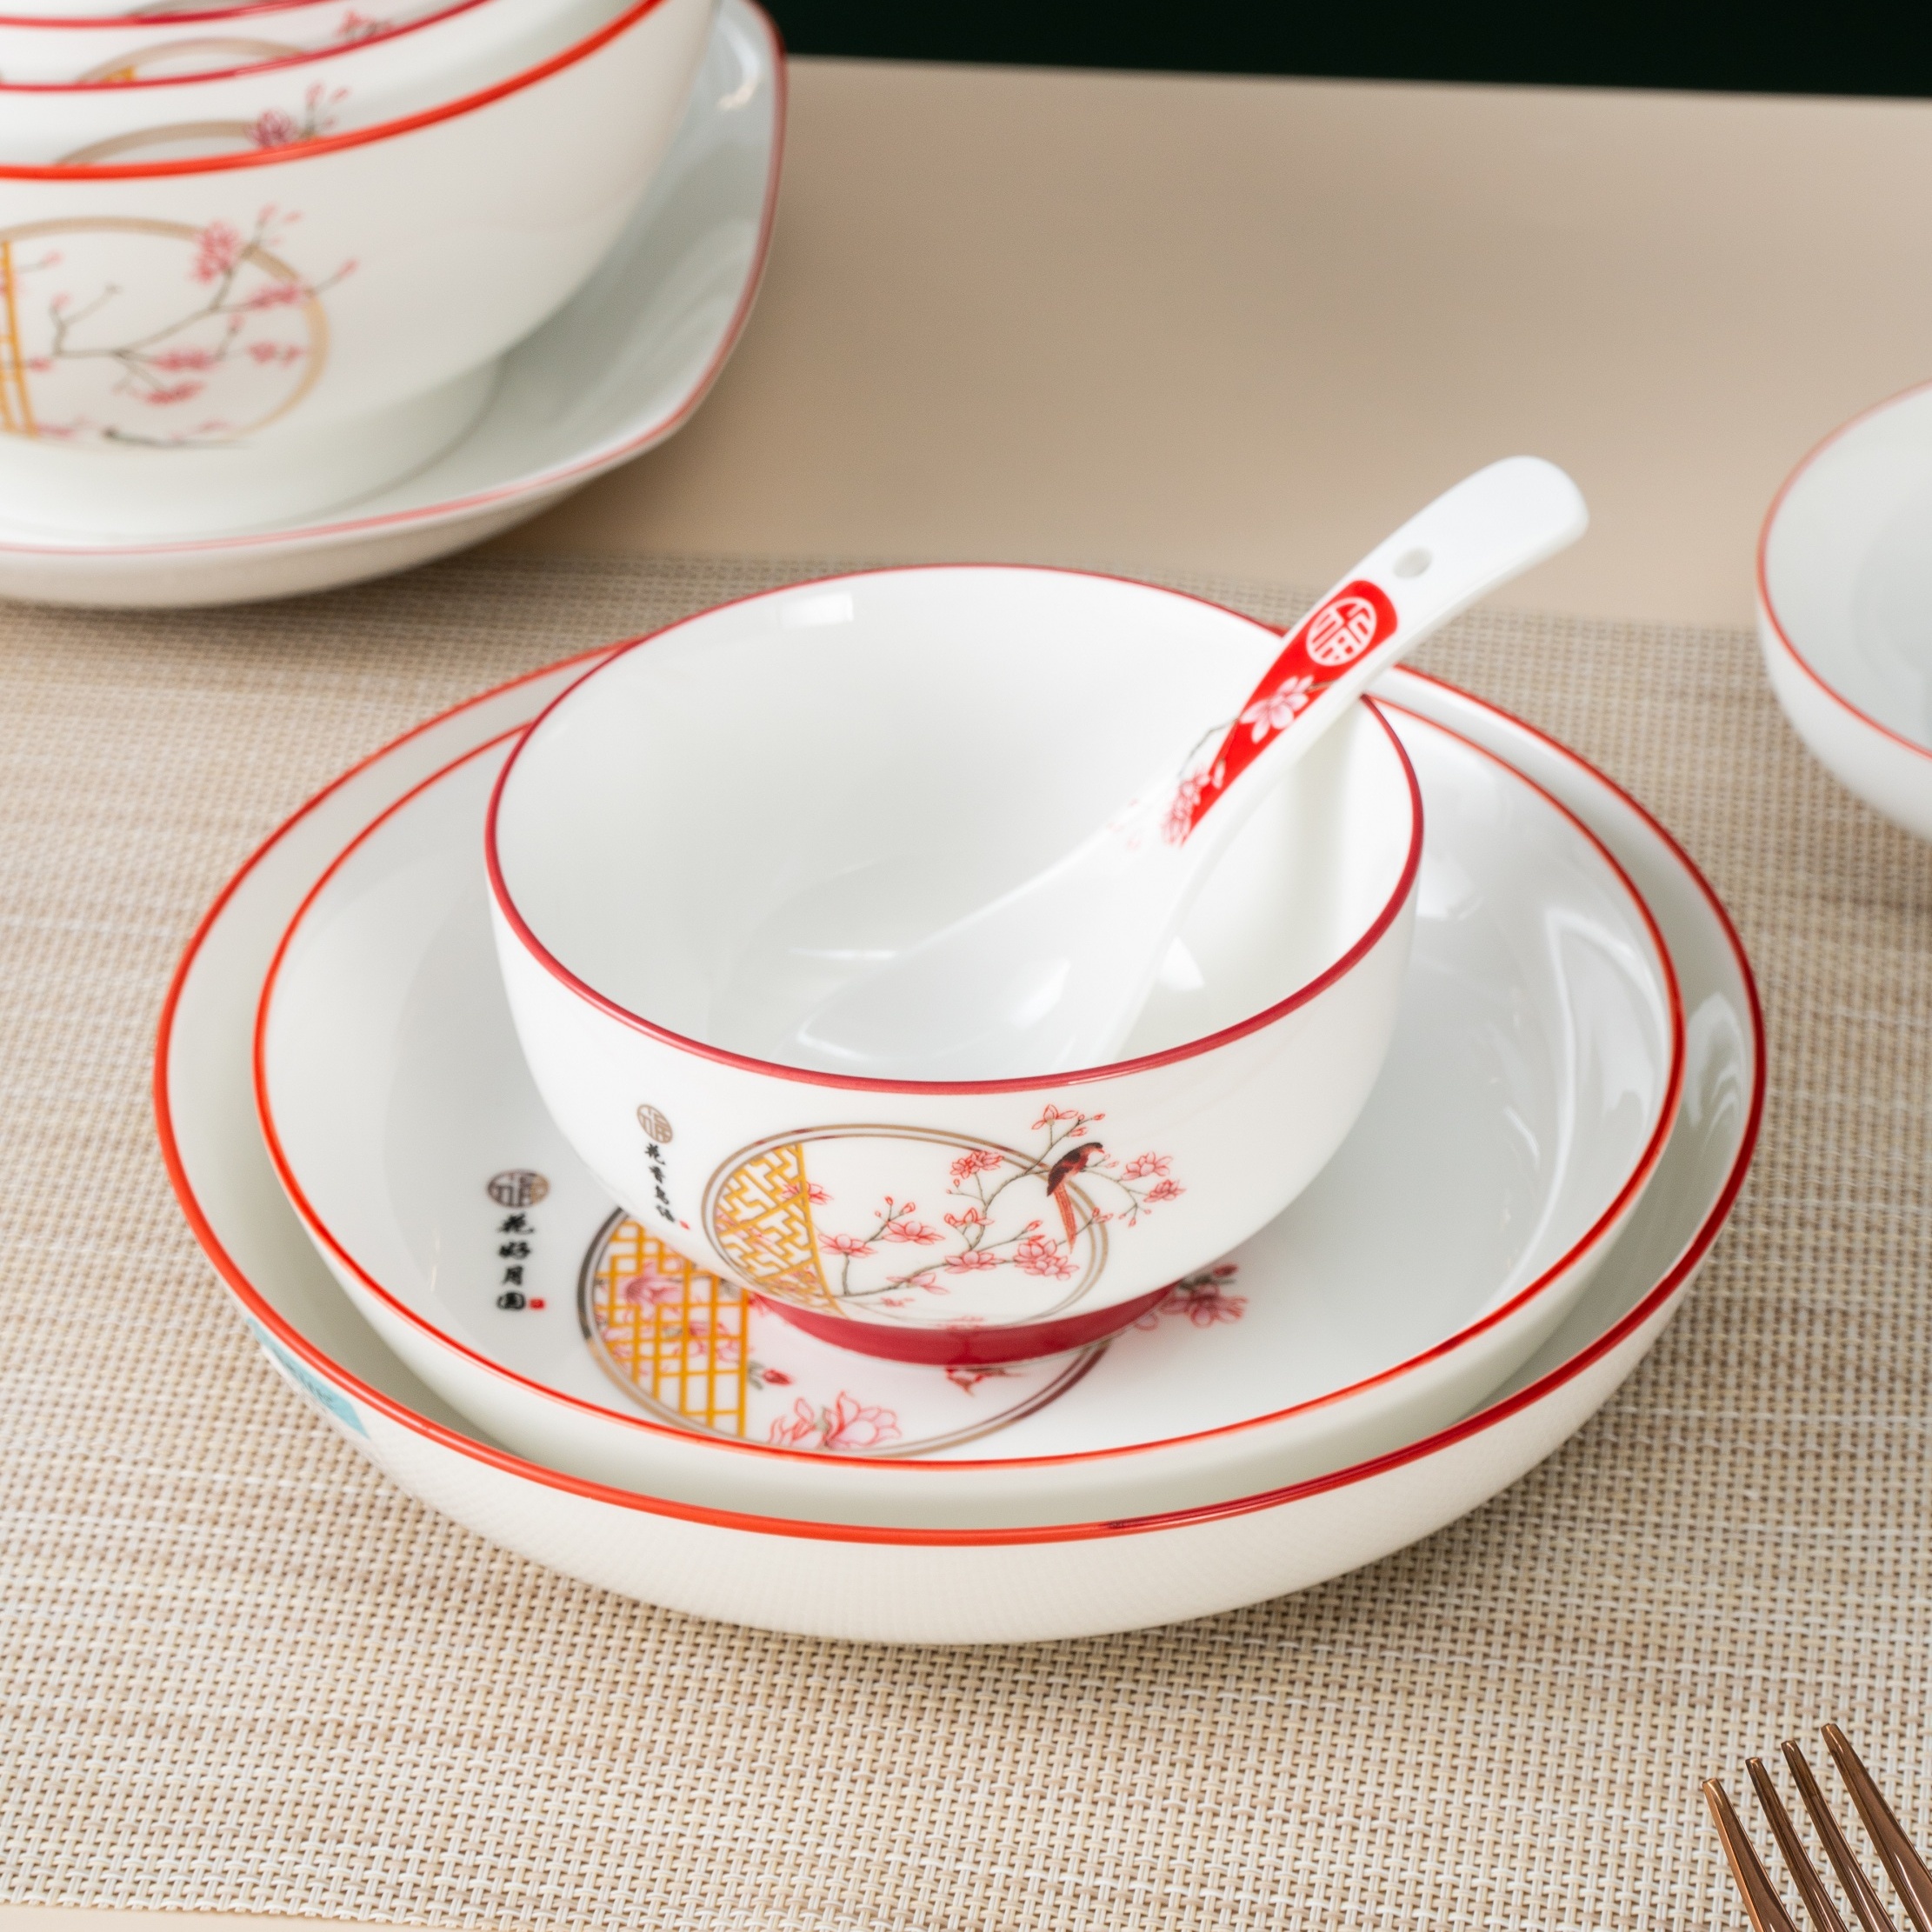 中式泡沫装陶瓷碗花好月圆喜庆儿童饭碗大吉大利平安喜乐餐具碗勺